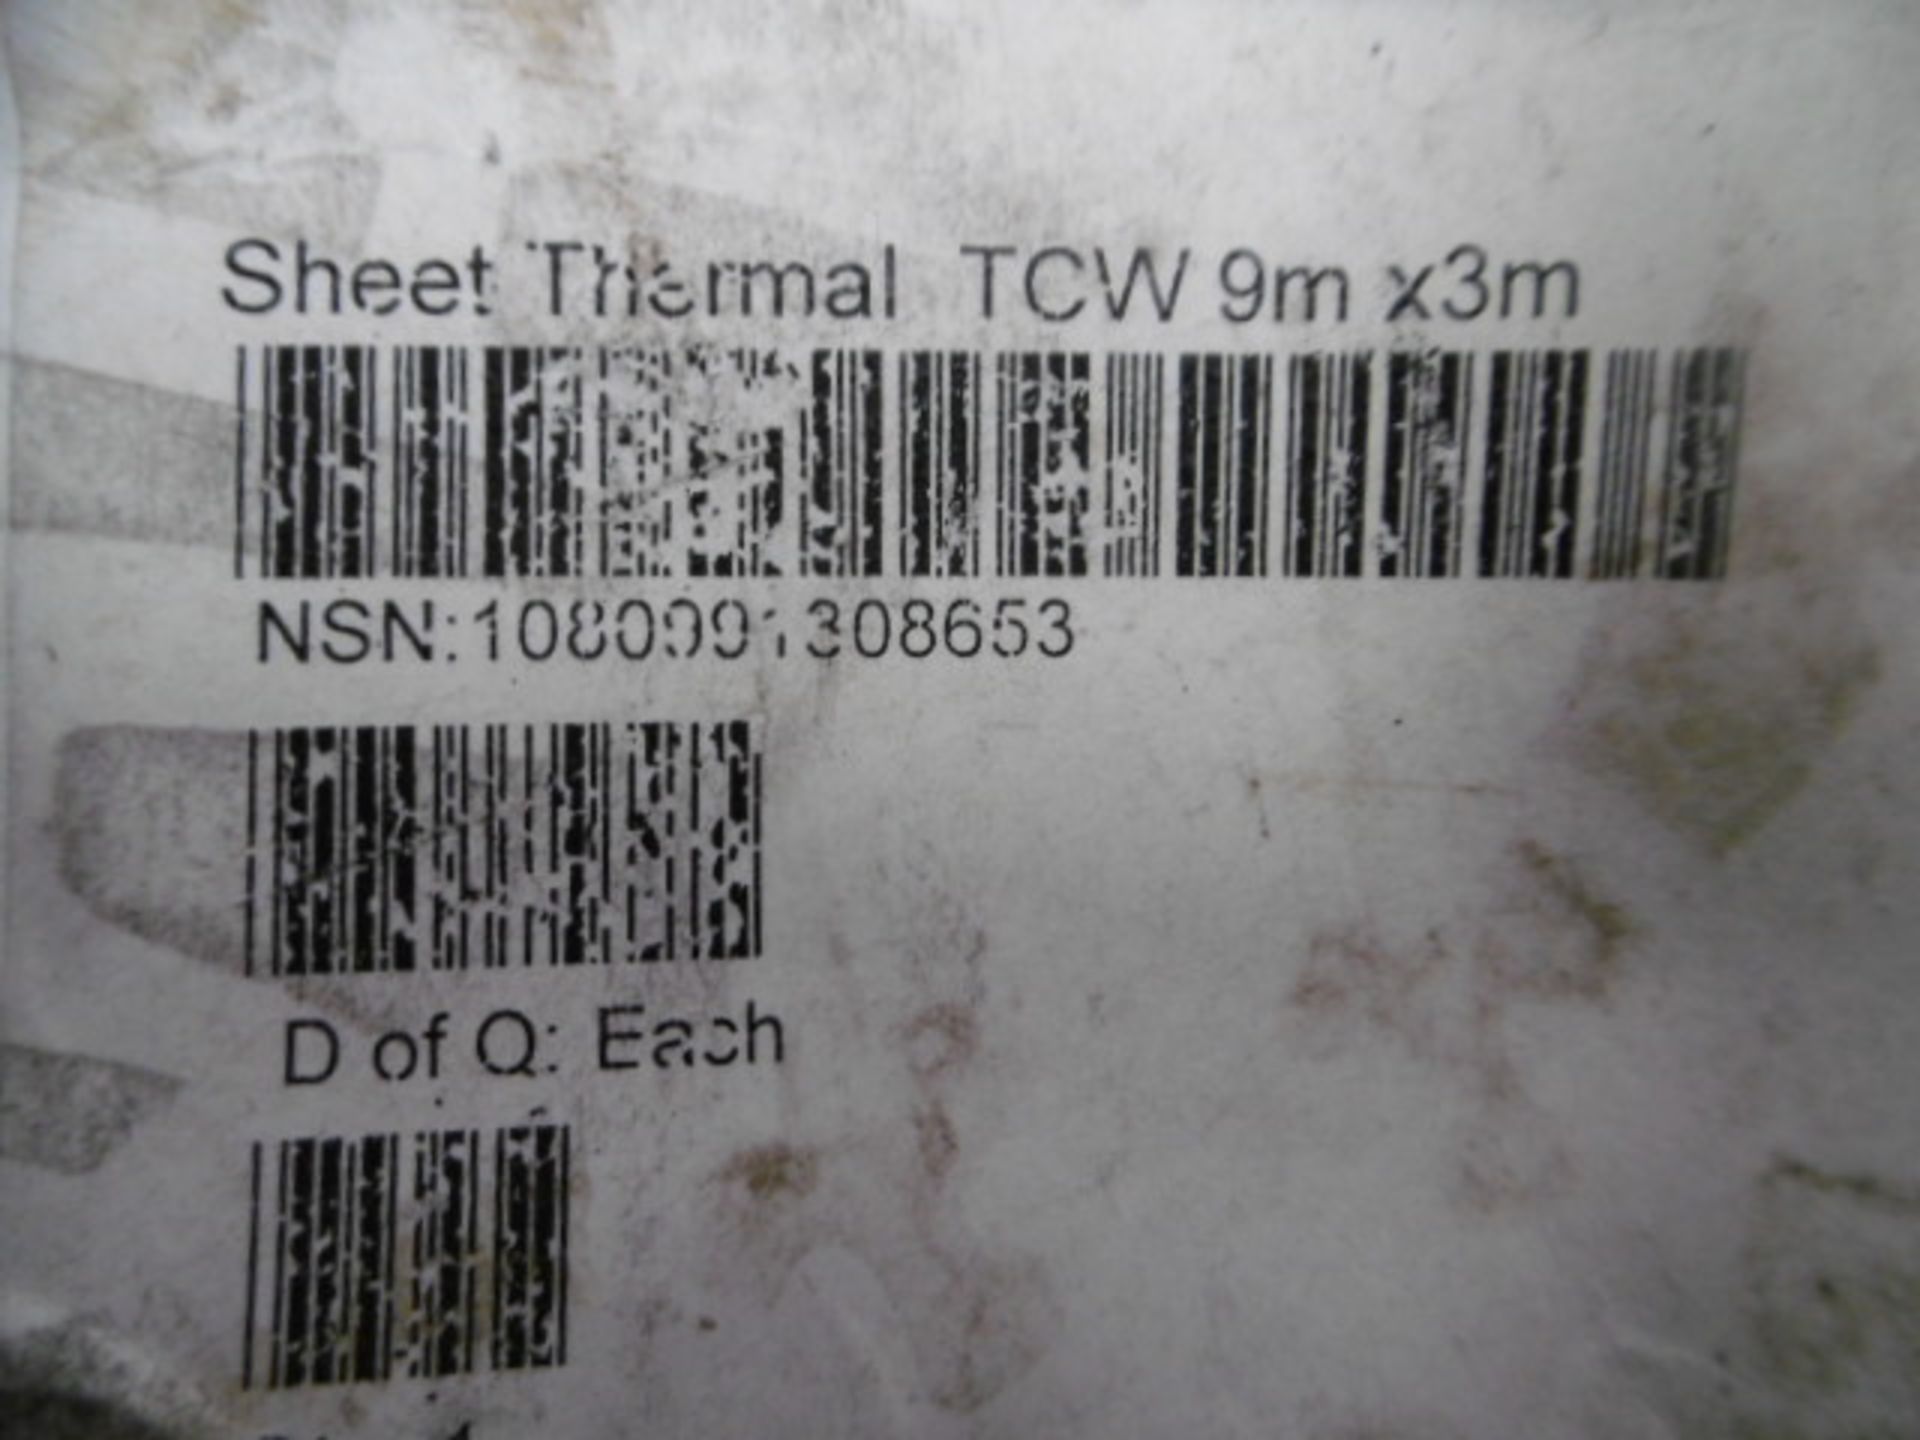 9m x 3m Thermal Sheet - Image 5 of 6